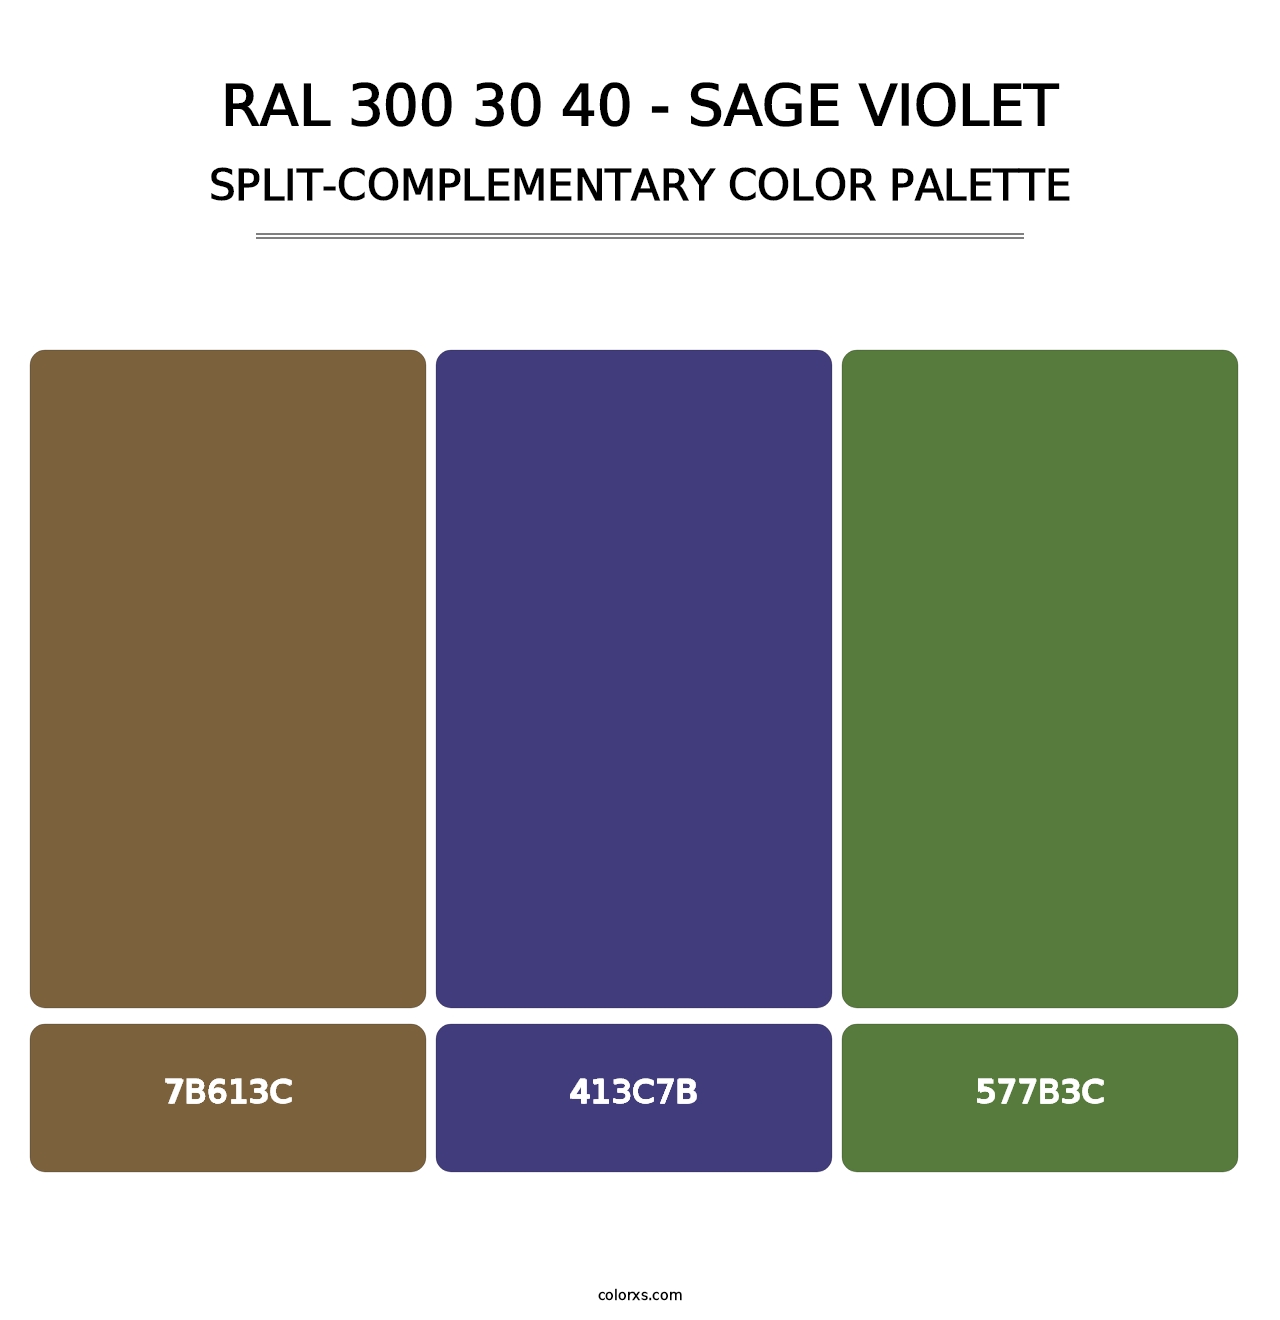 RAL 300 30 40 - Sage Violet - Split-Complementary Color Palette